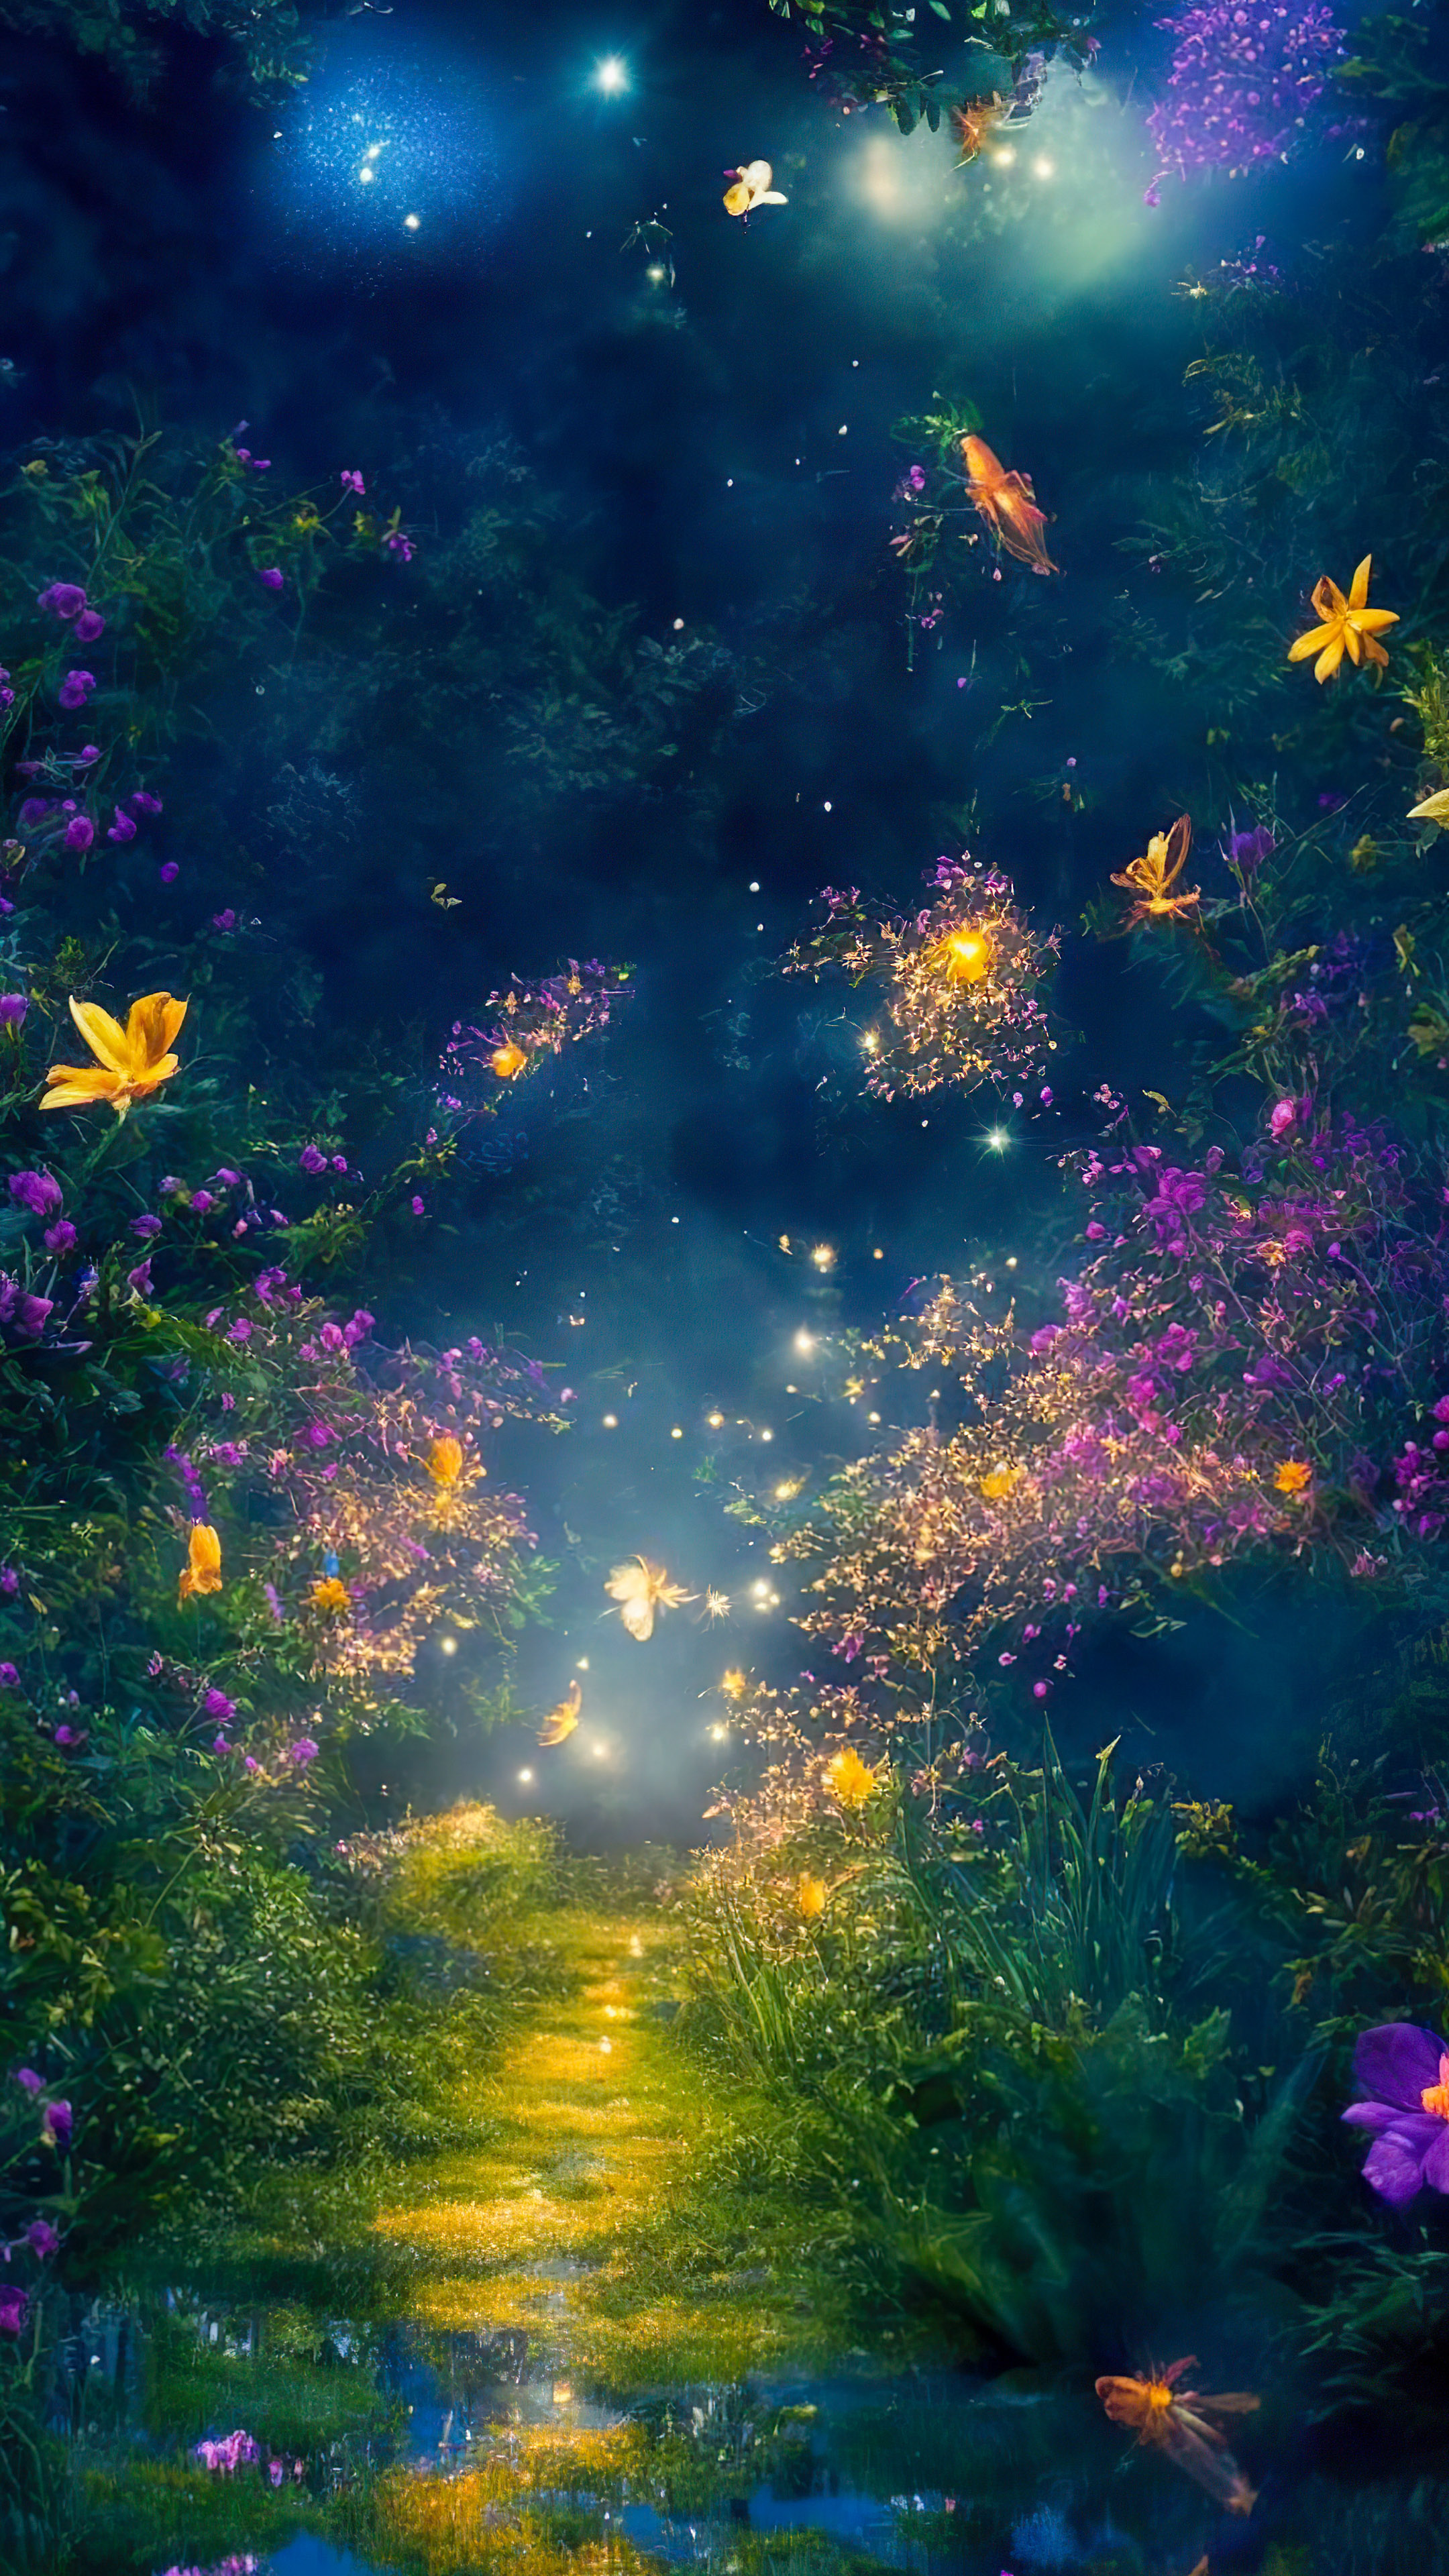 Téléchargez la fantaisie de notre fond d'écran de paysage fantastique, illustrant un jardin magique et capricieux la nuit, où les lucioles dansent autour de fleurs luminescentes vibrantes.